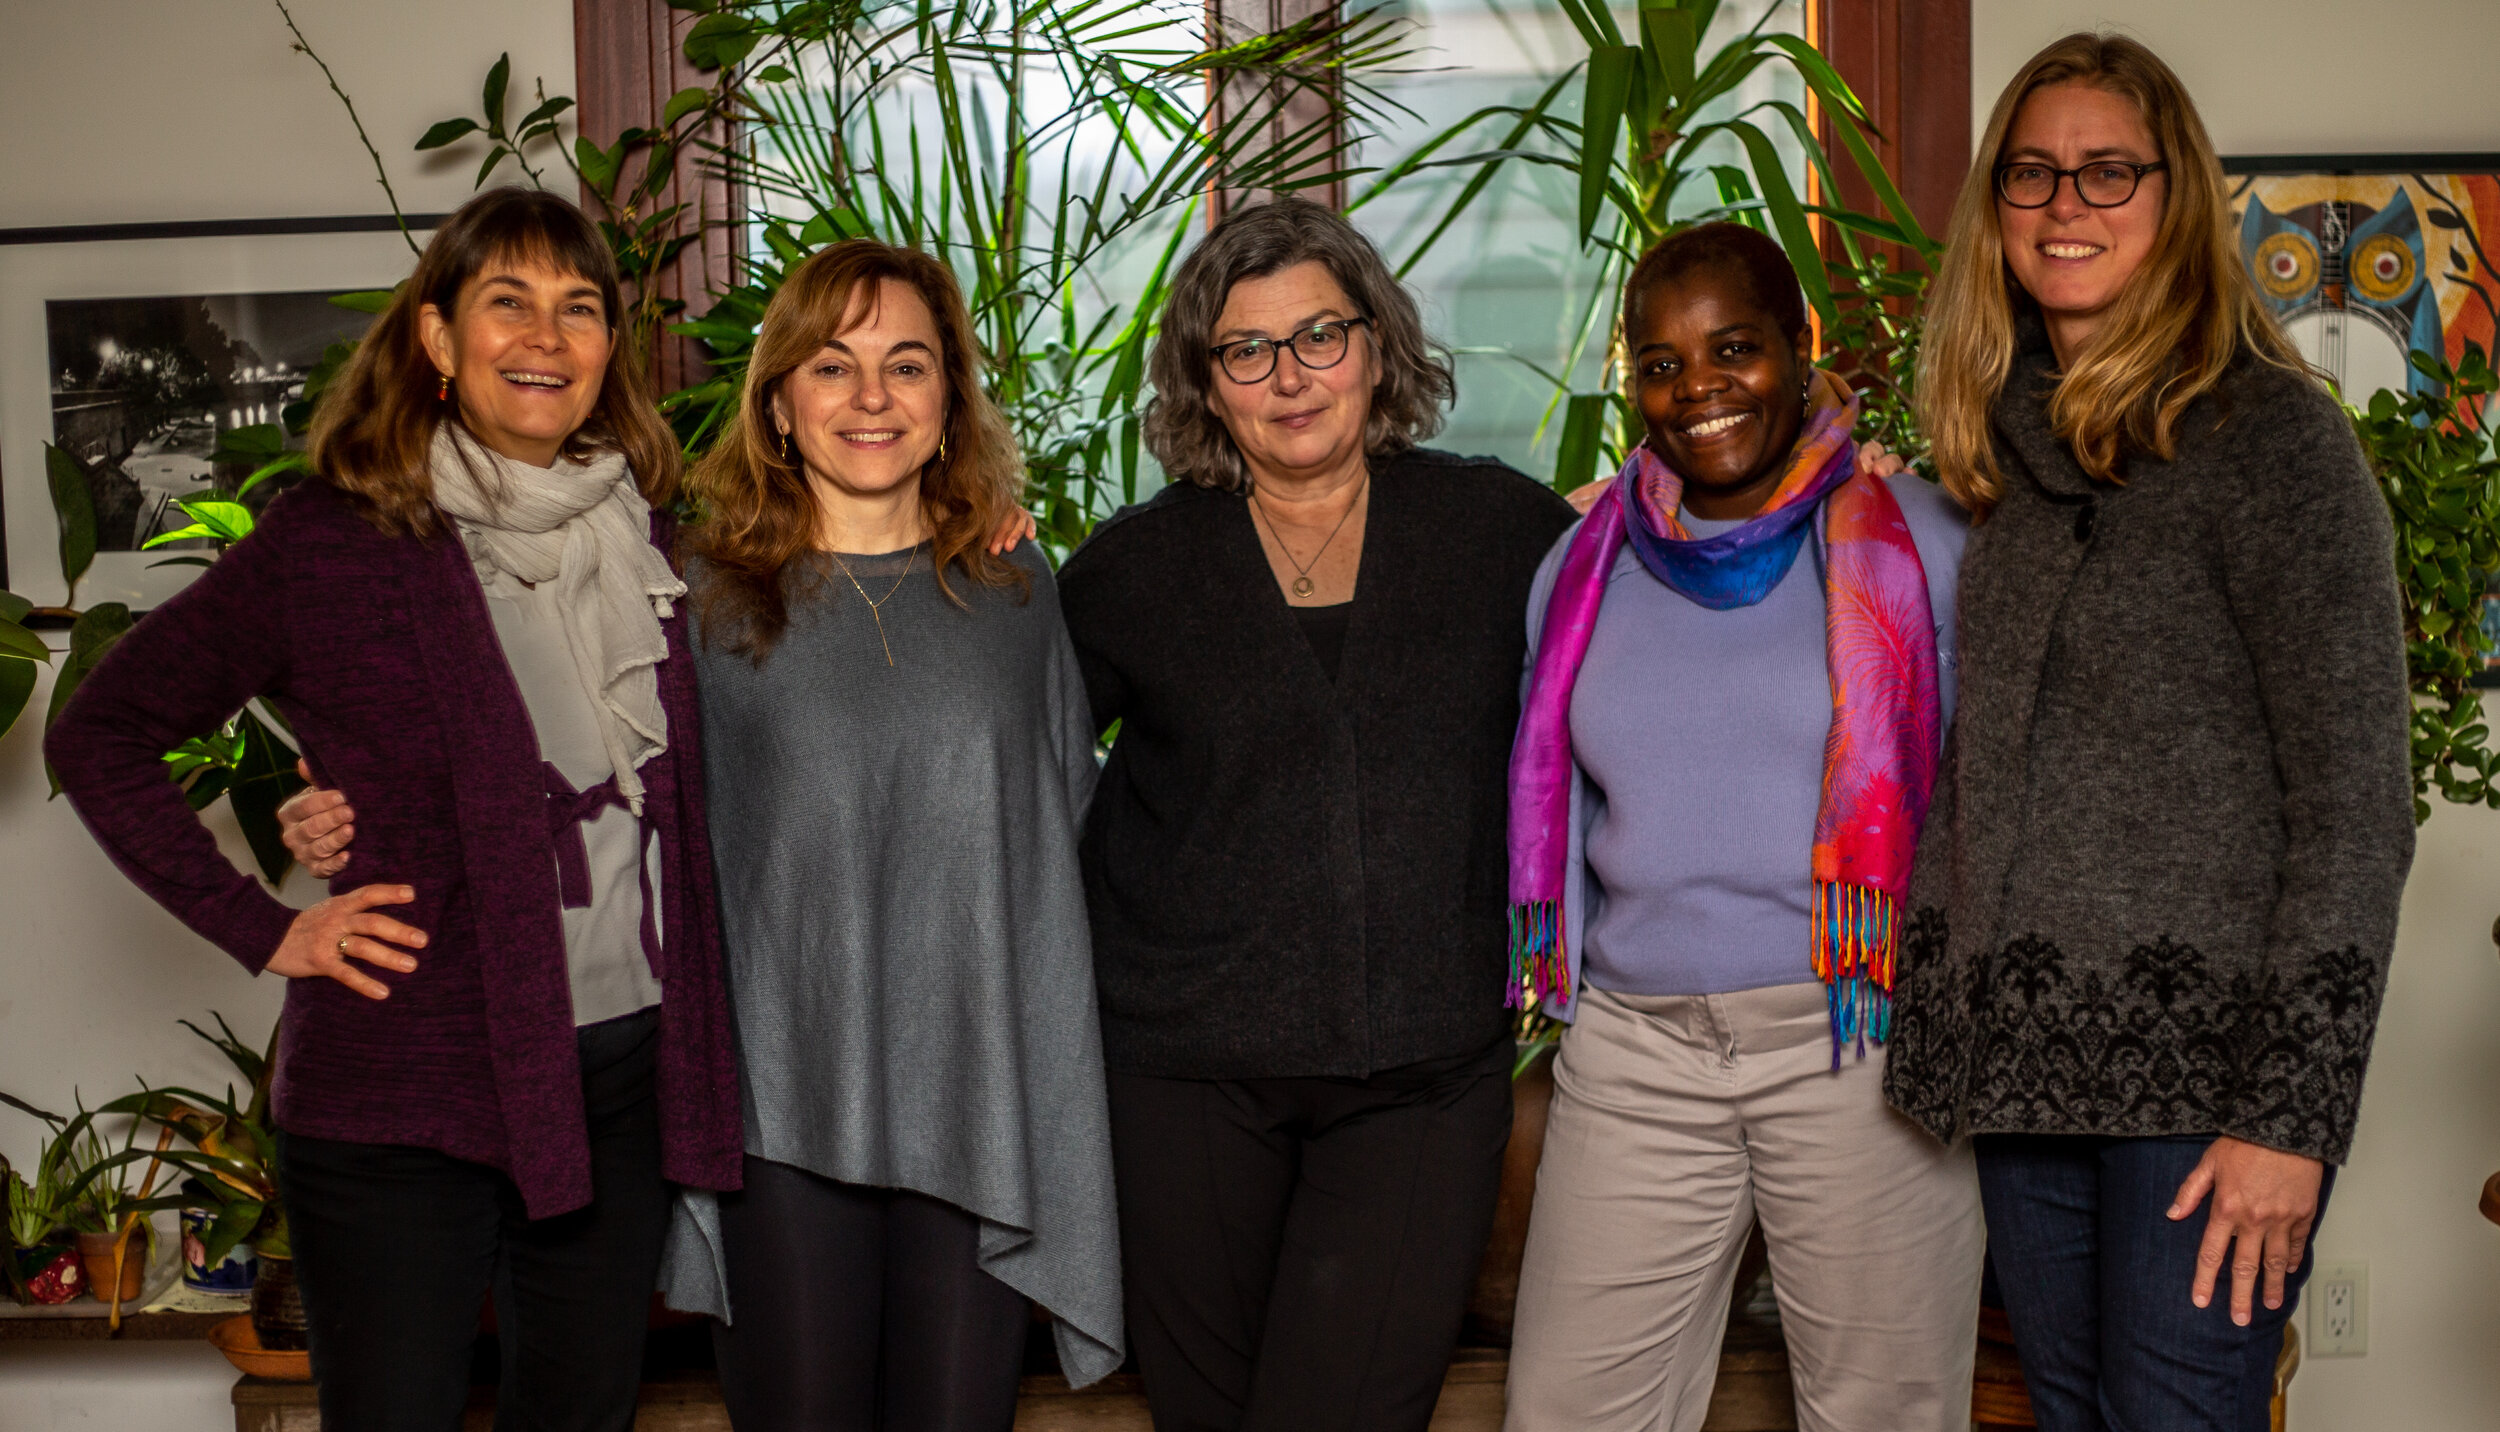 我们的板!从左至右:索尼娅·德玛尔塔，玛丽·库斯蒂克，帕特里夏·弗莱厄蒂，阿温贾·奥蒂亚托，Åsa奥林·阿尔伯格。照片中没有:卡洛琳·吉列